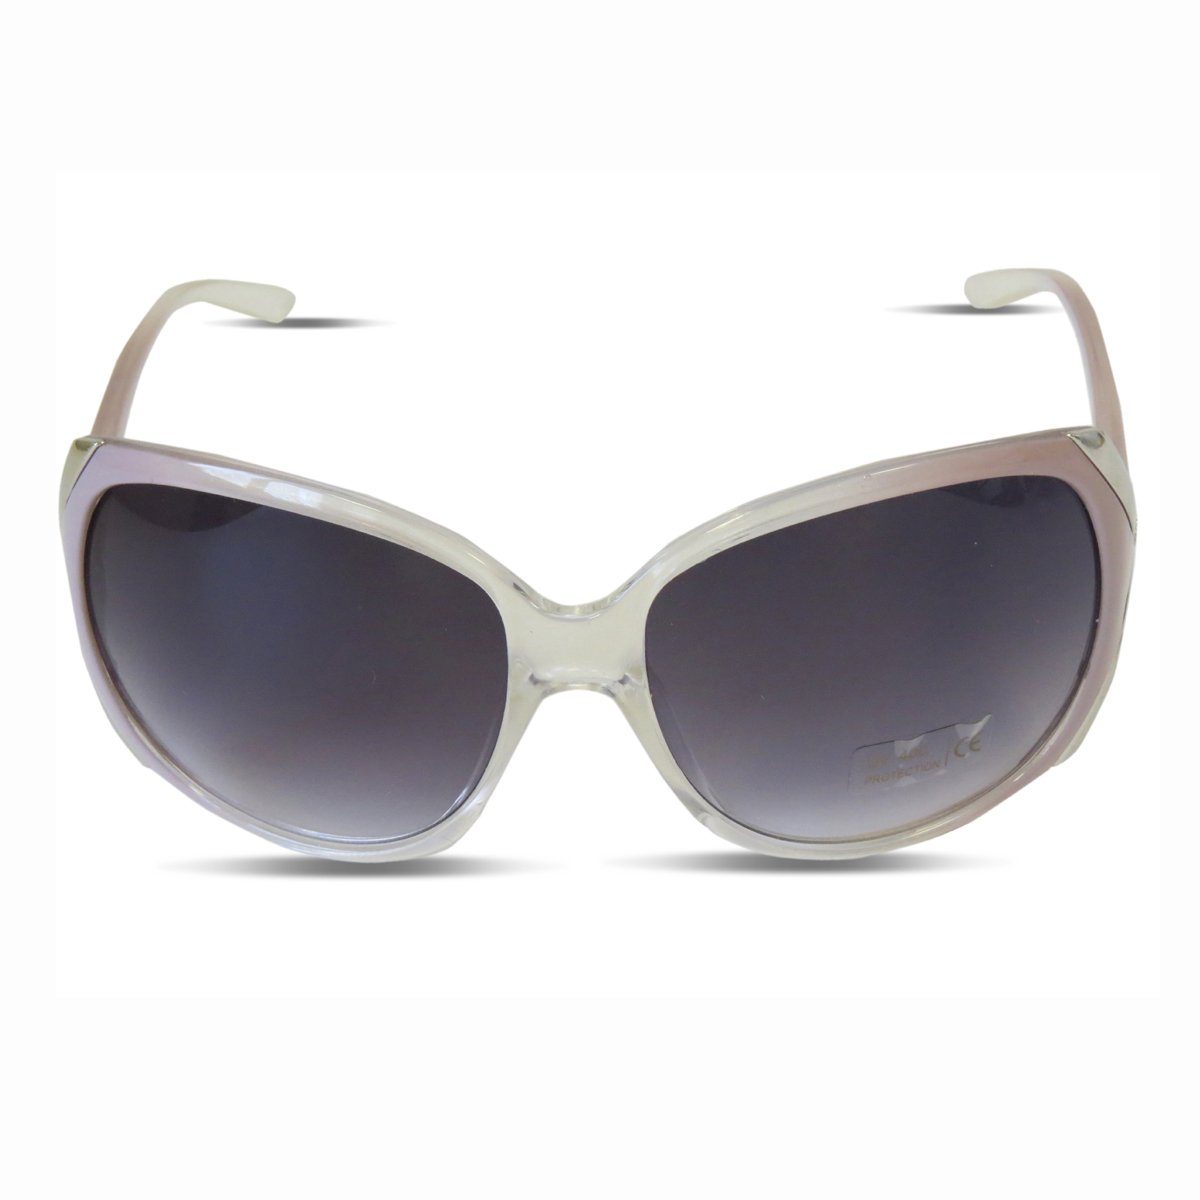 Sonia Originelli Sonnenbrille Sonnenbrille Agent Verspiegelt Sommer Fun Brille Onesize grau | Sonnenbrillen